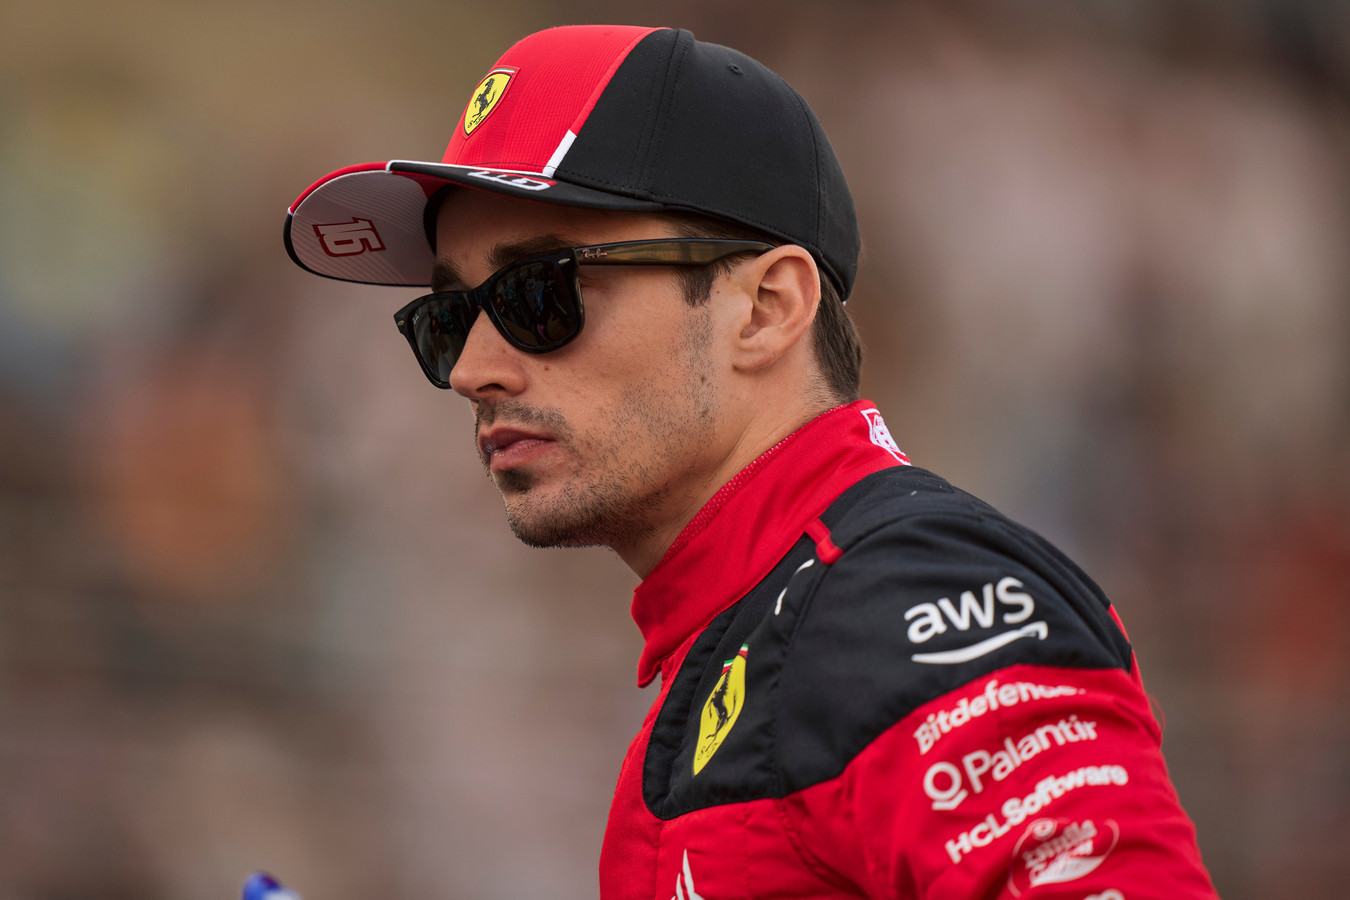 Leclercas gavo 3 startinių pozicijų baudą